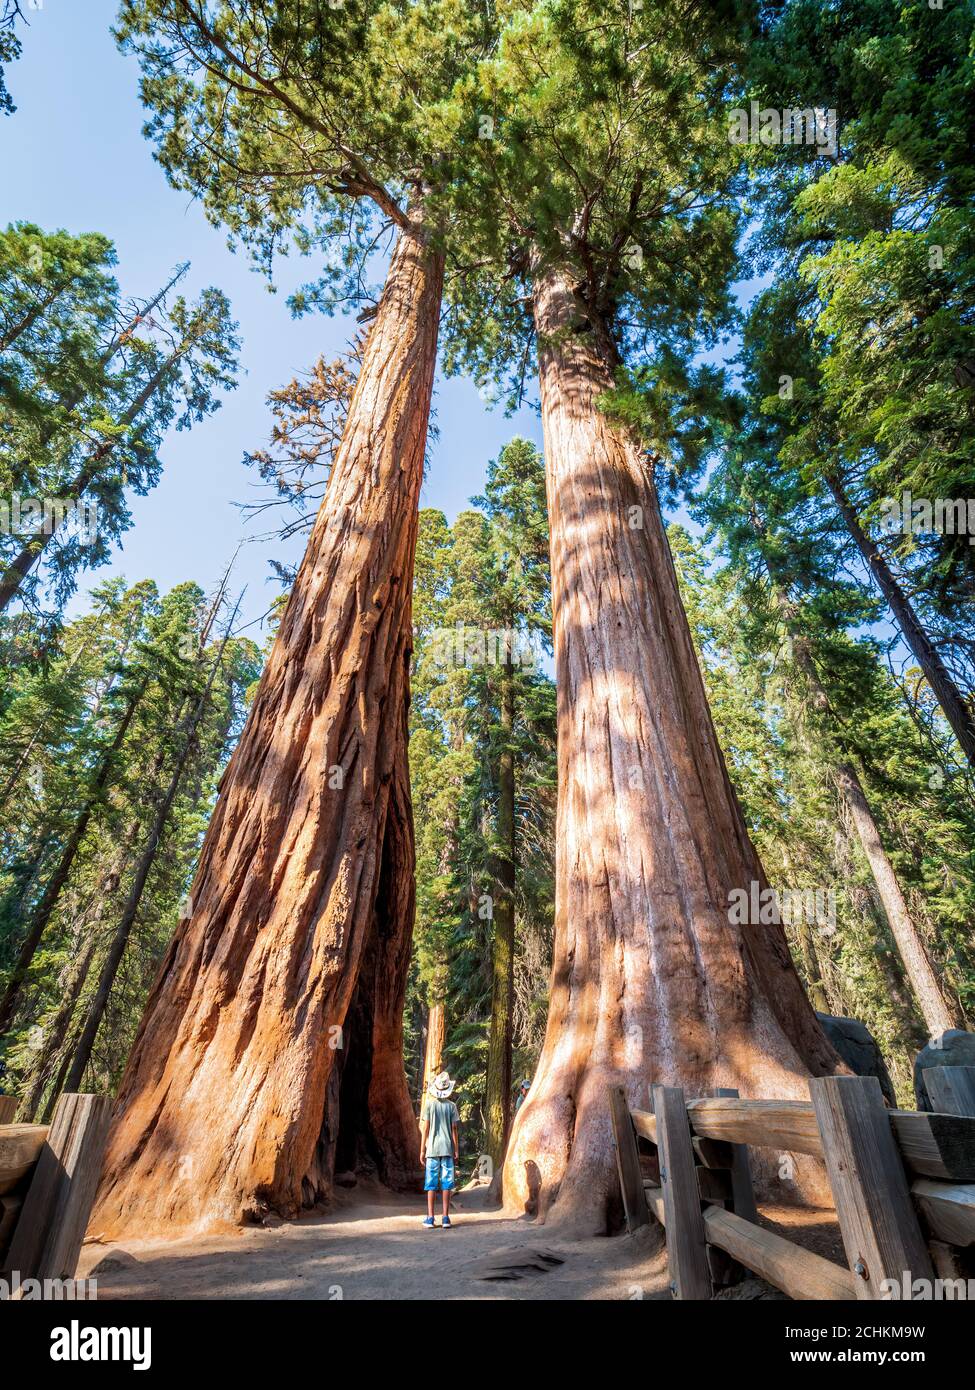 Tronco d'albero gigantesco immagini e fotografie stock ad alta risoluzione  - Pagina 5 - Alamy